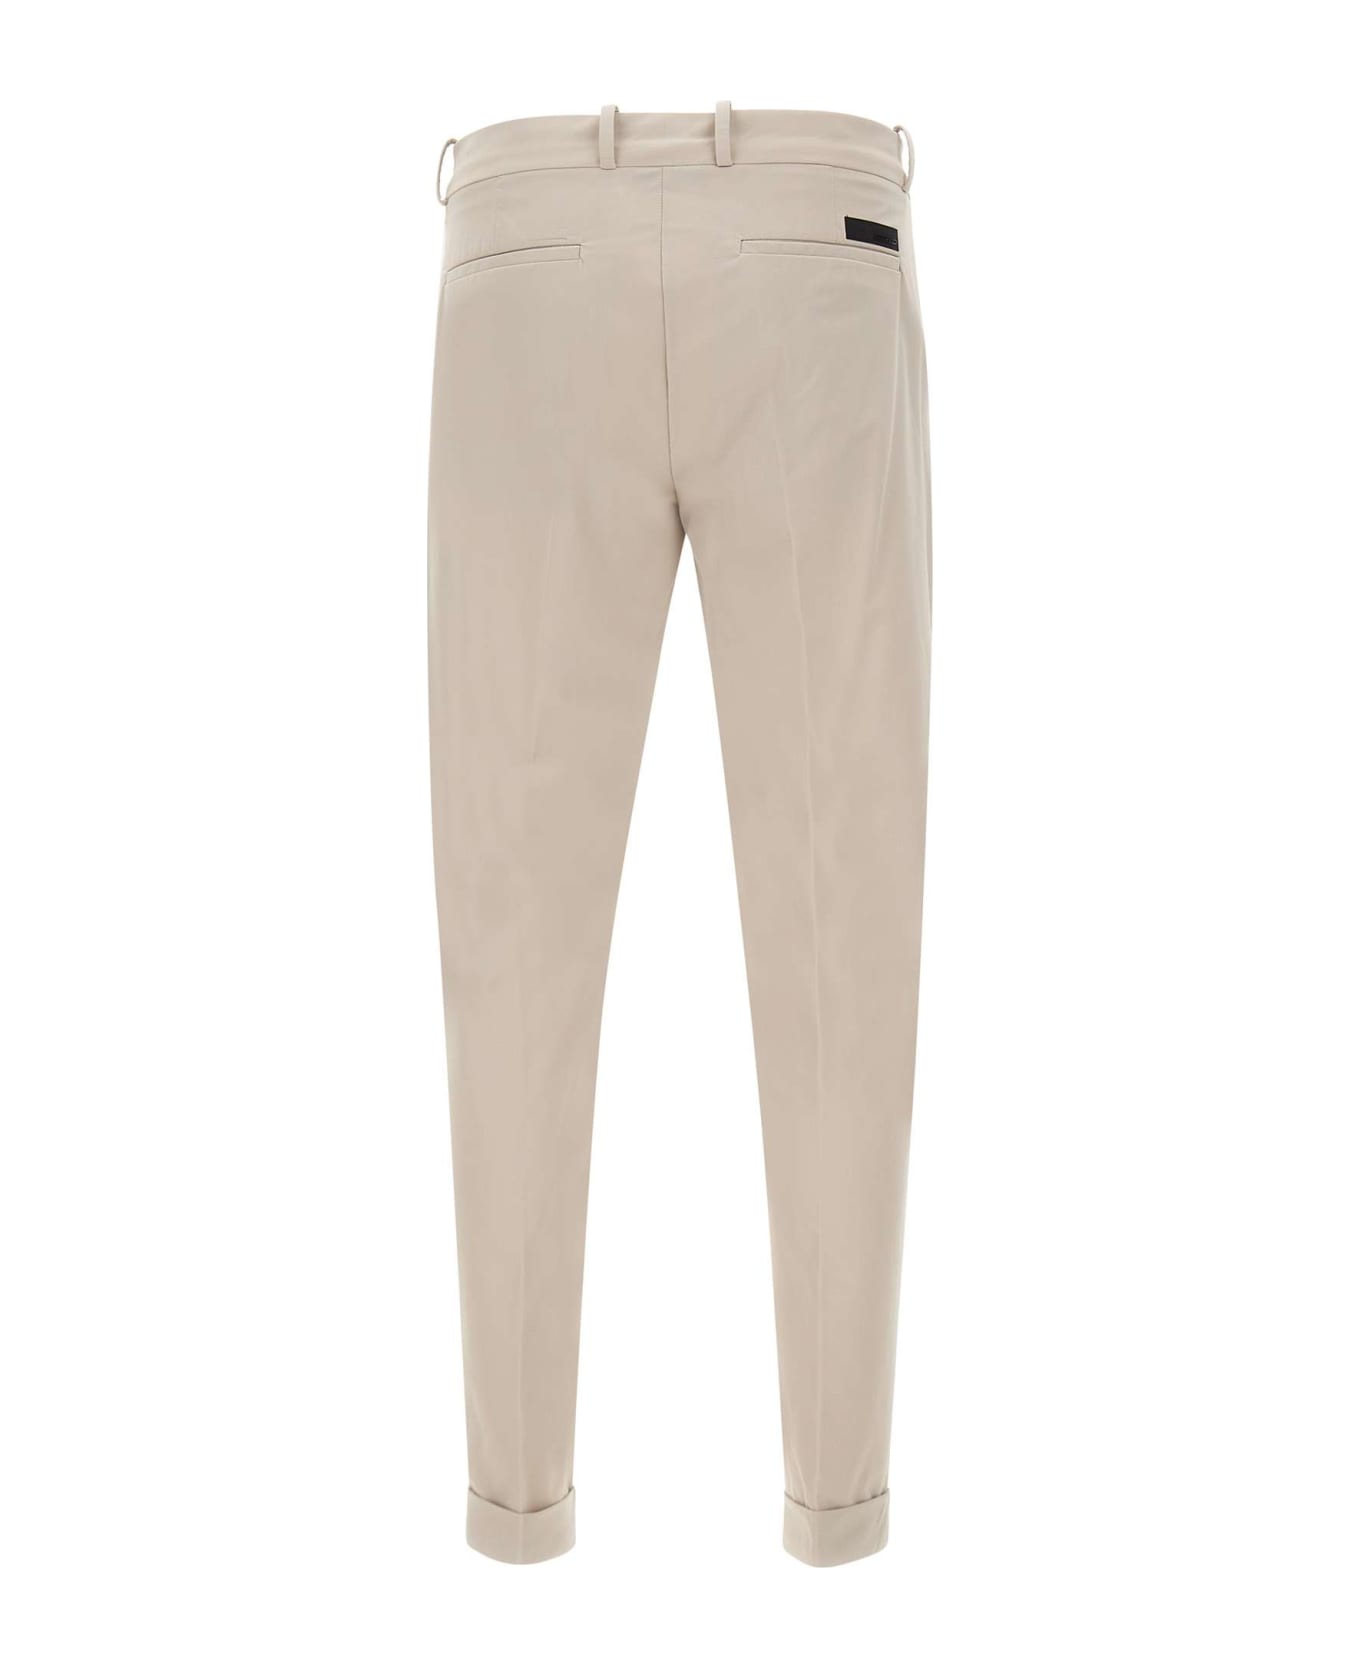 RRD - Roberto Ricci Design Men's Trousers 'revo Chino' - White